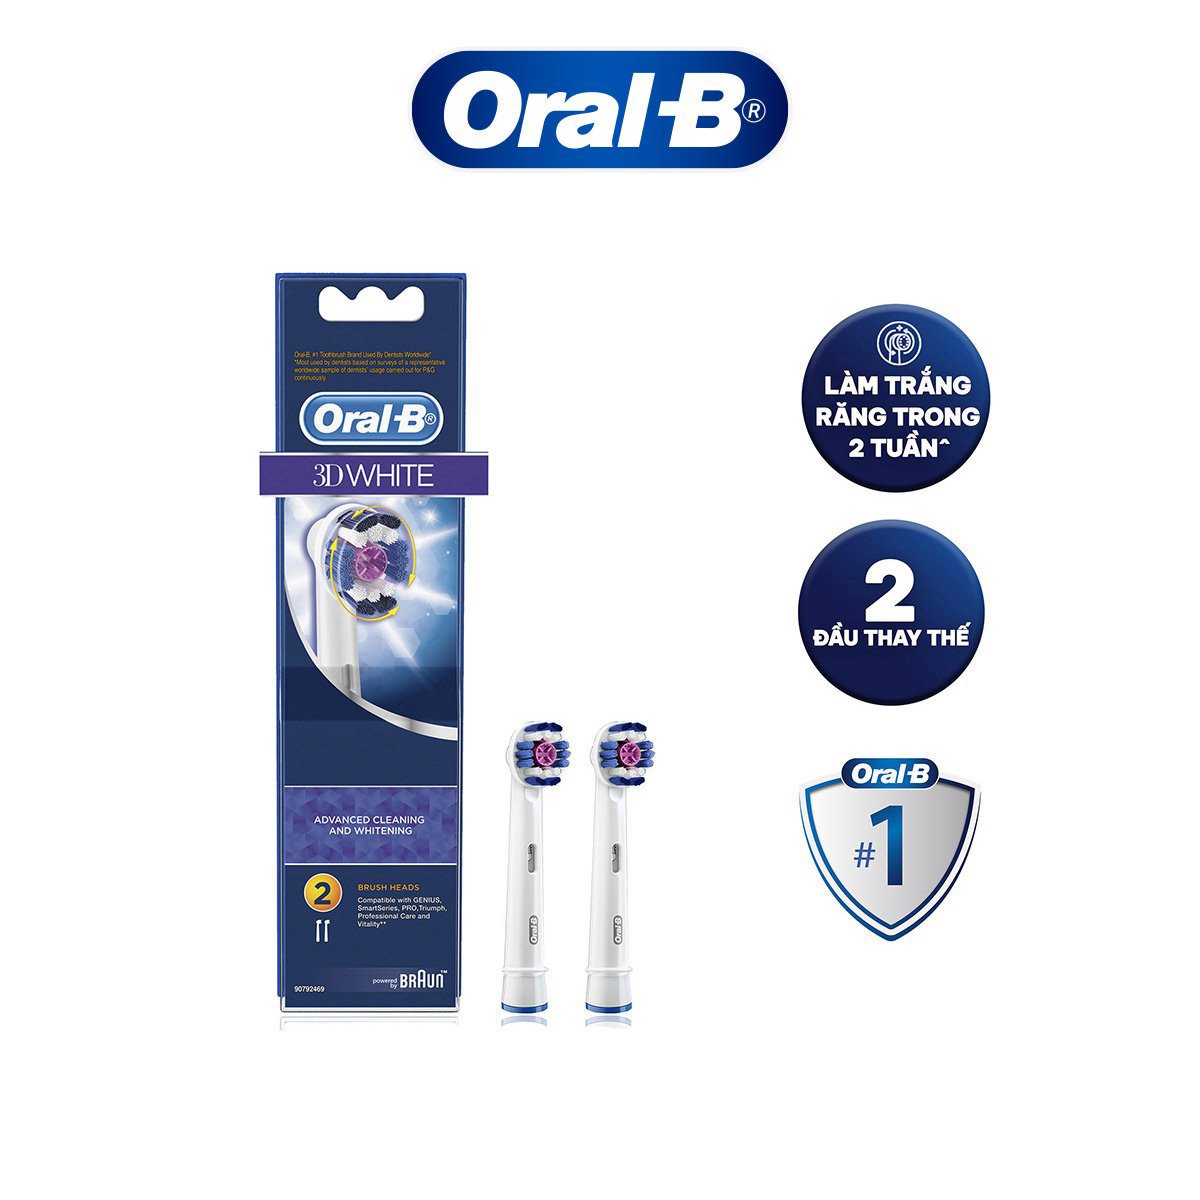 Đầu bàn chải Oral-B 3D White - Hàng chính hãng 100